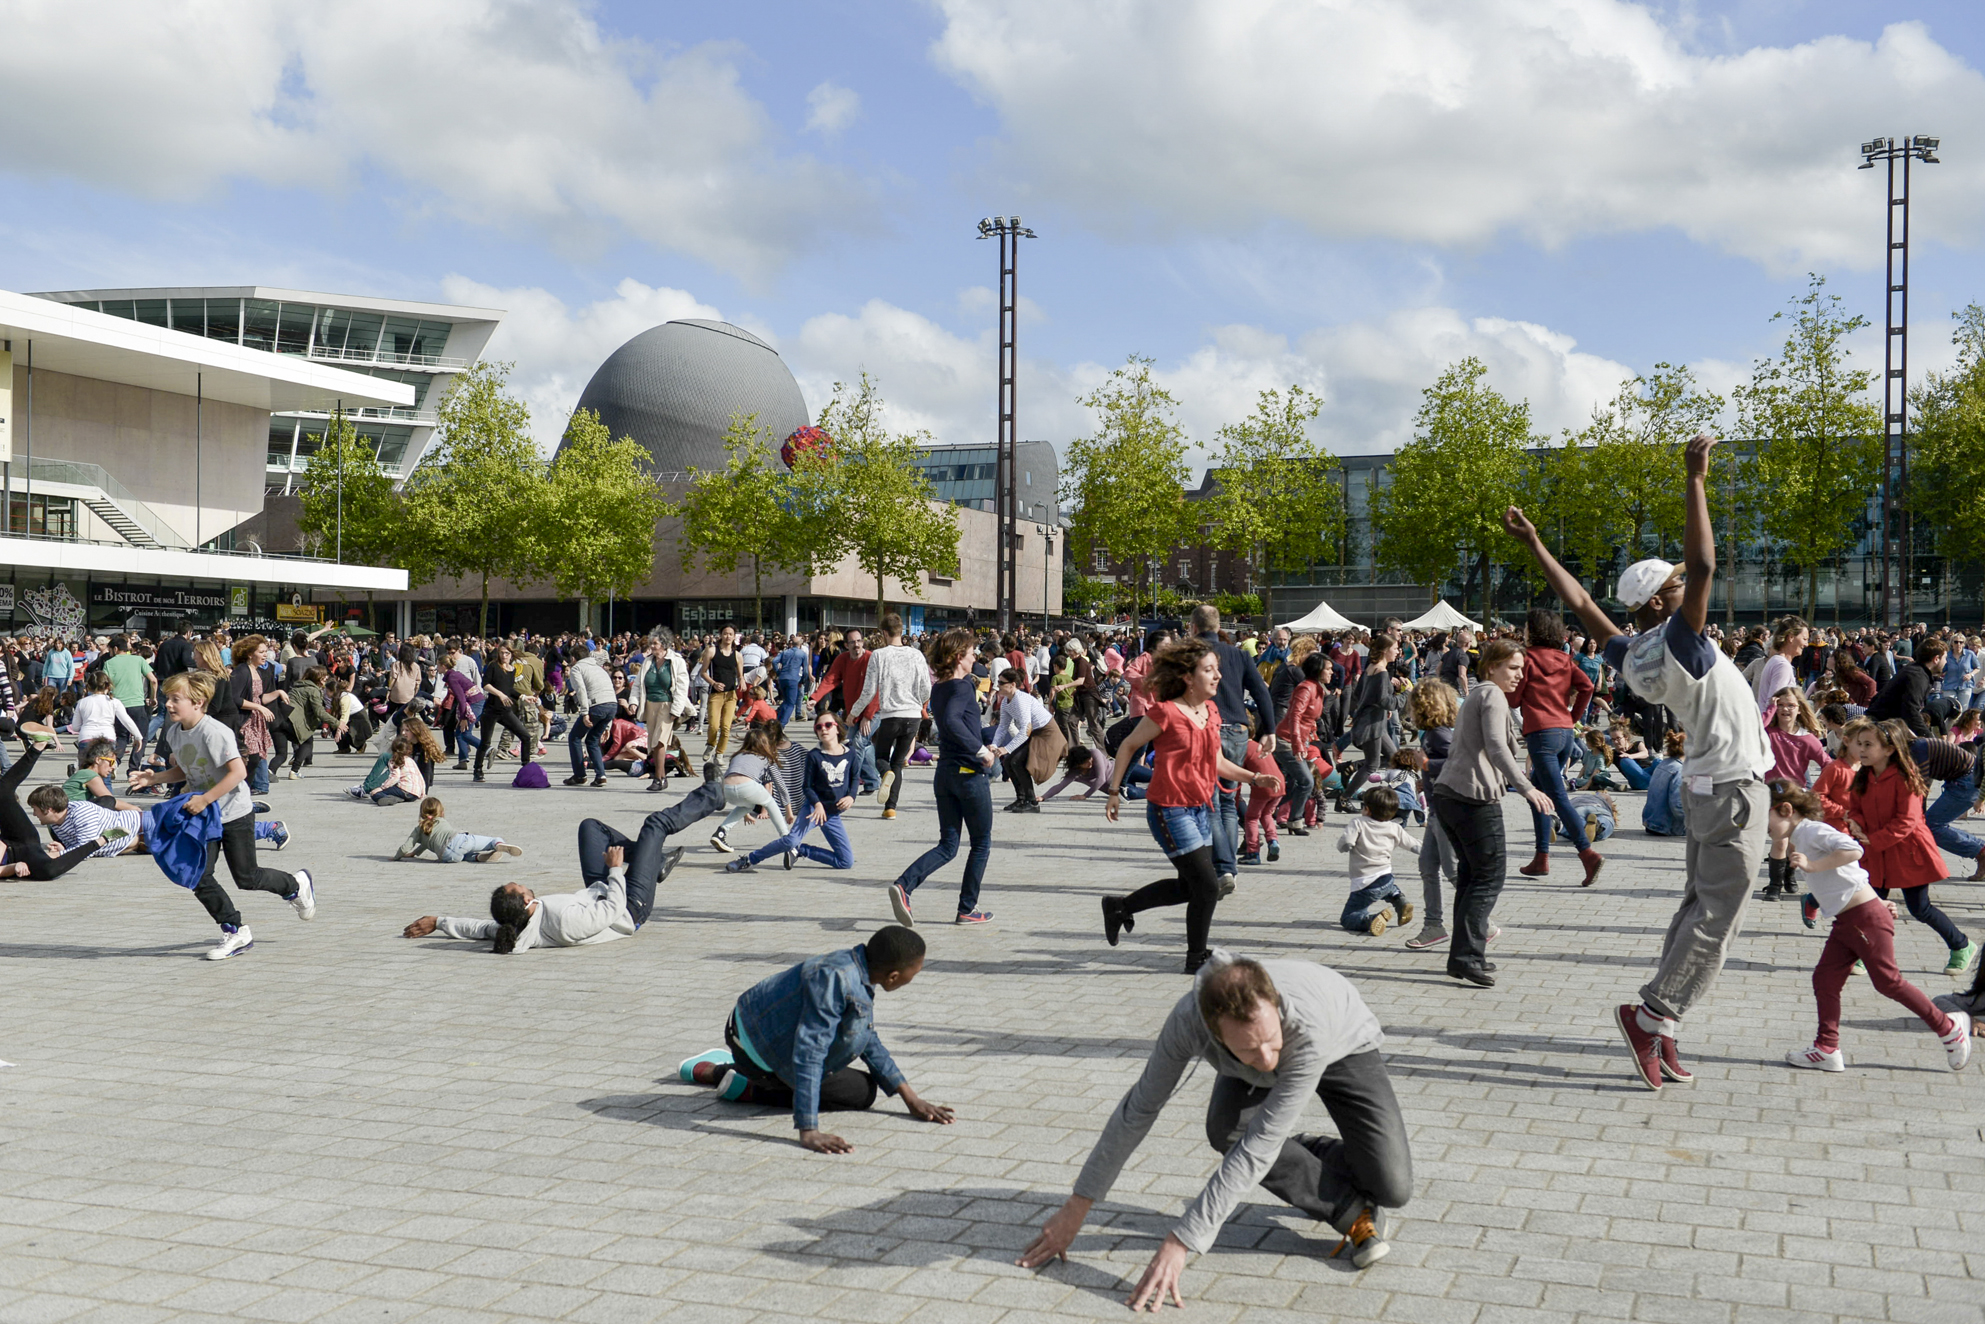 Tanz für alle auf dem Berliner Tempelhof: "Fous de danse"